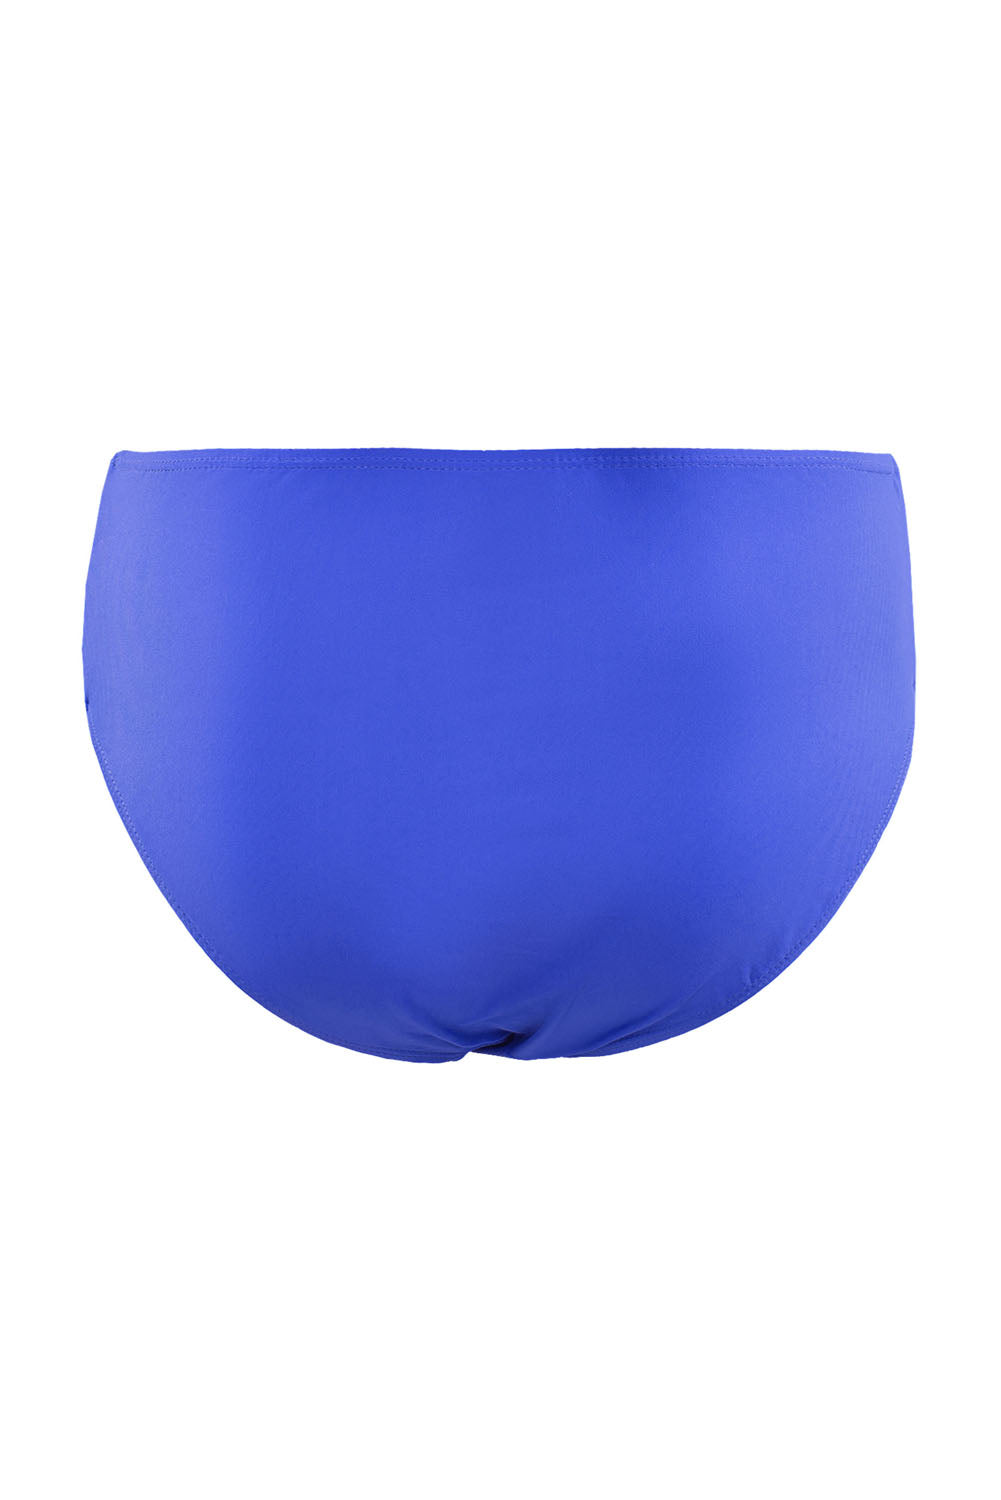 Blue Halter Neck Criss Cross High Waist Bikini Set